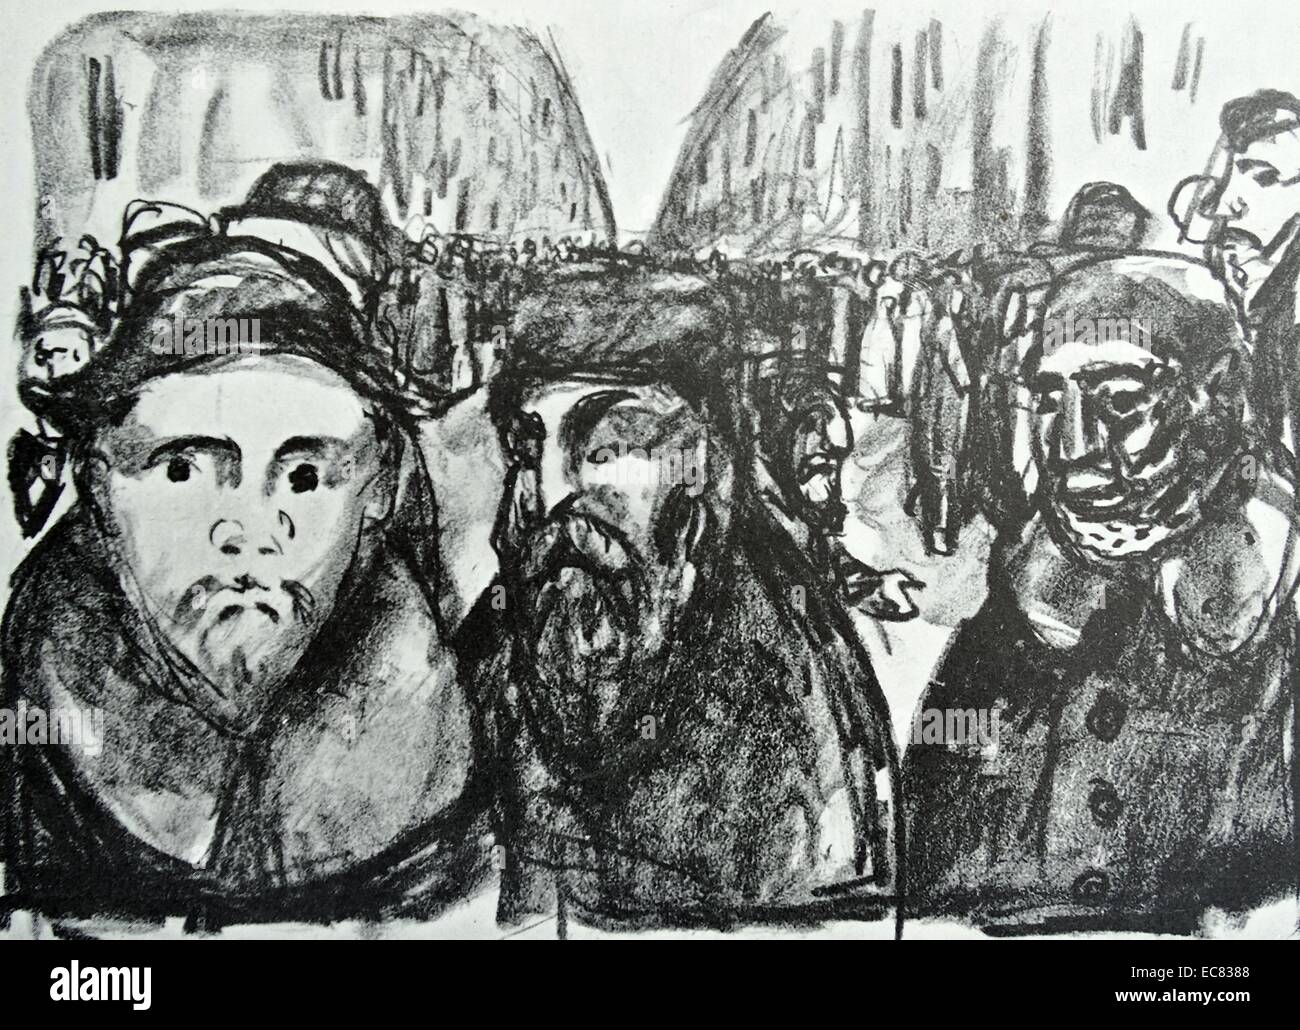 Lavoro intitolato Granatiere Street dall artista norvegese Edvard Munch (1863-1944). Questo lavoro è stato prodotto nel 1920. Foto Stock